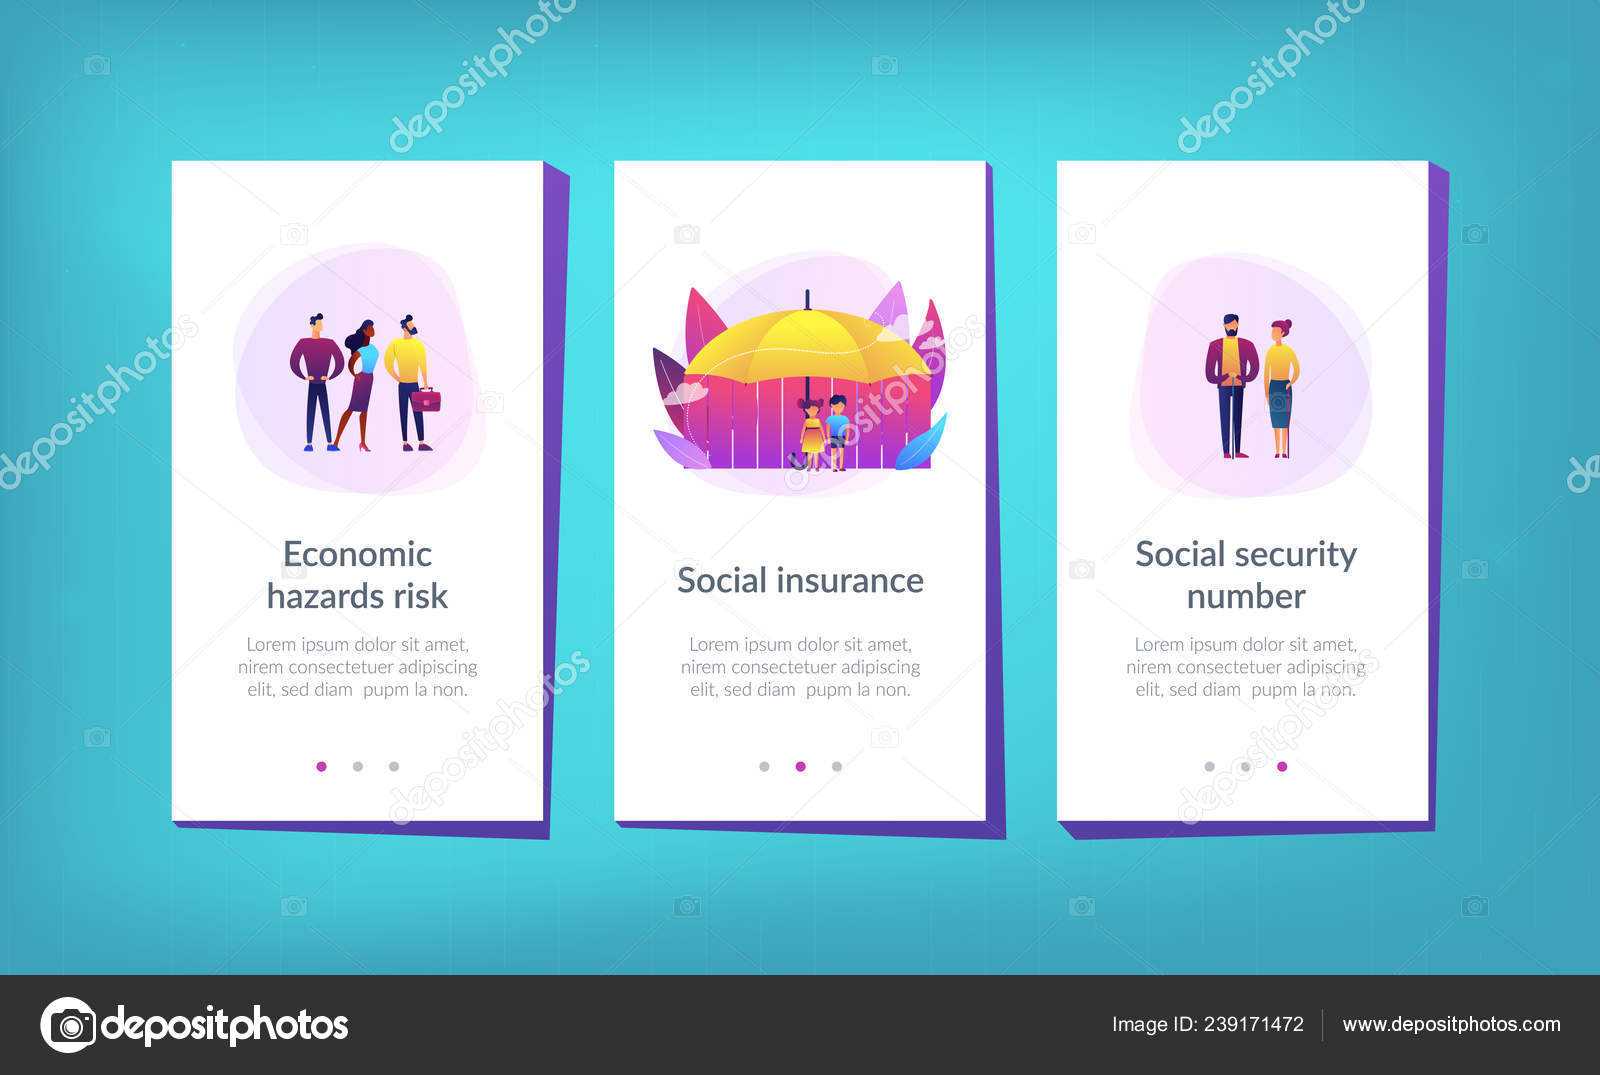 Blank Social Security Card Template | Social Insurance App With Social Security Card Template Download